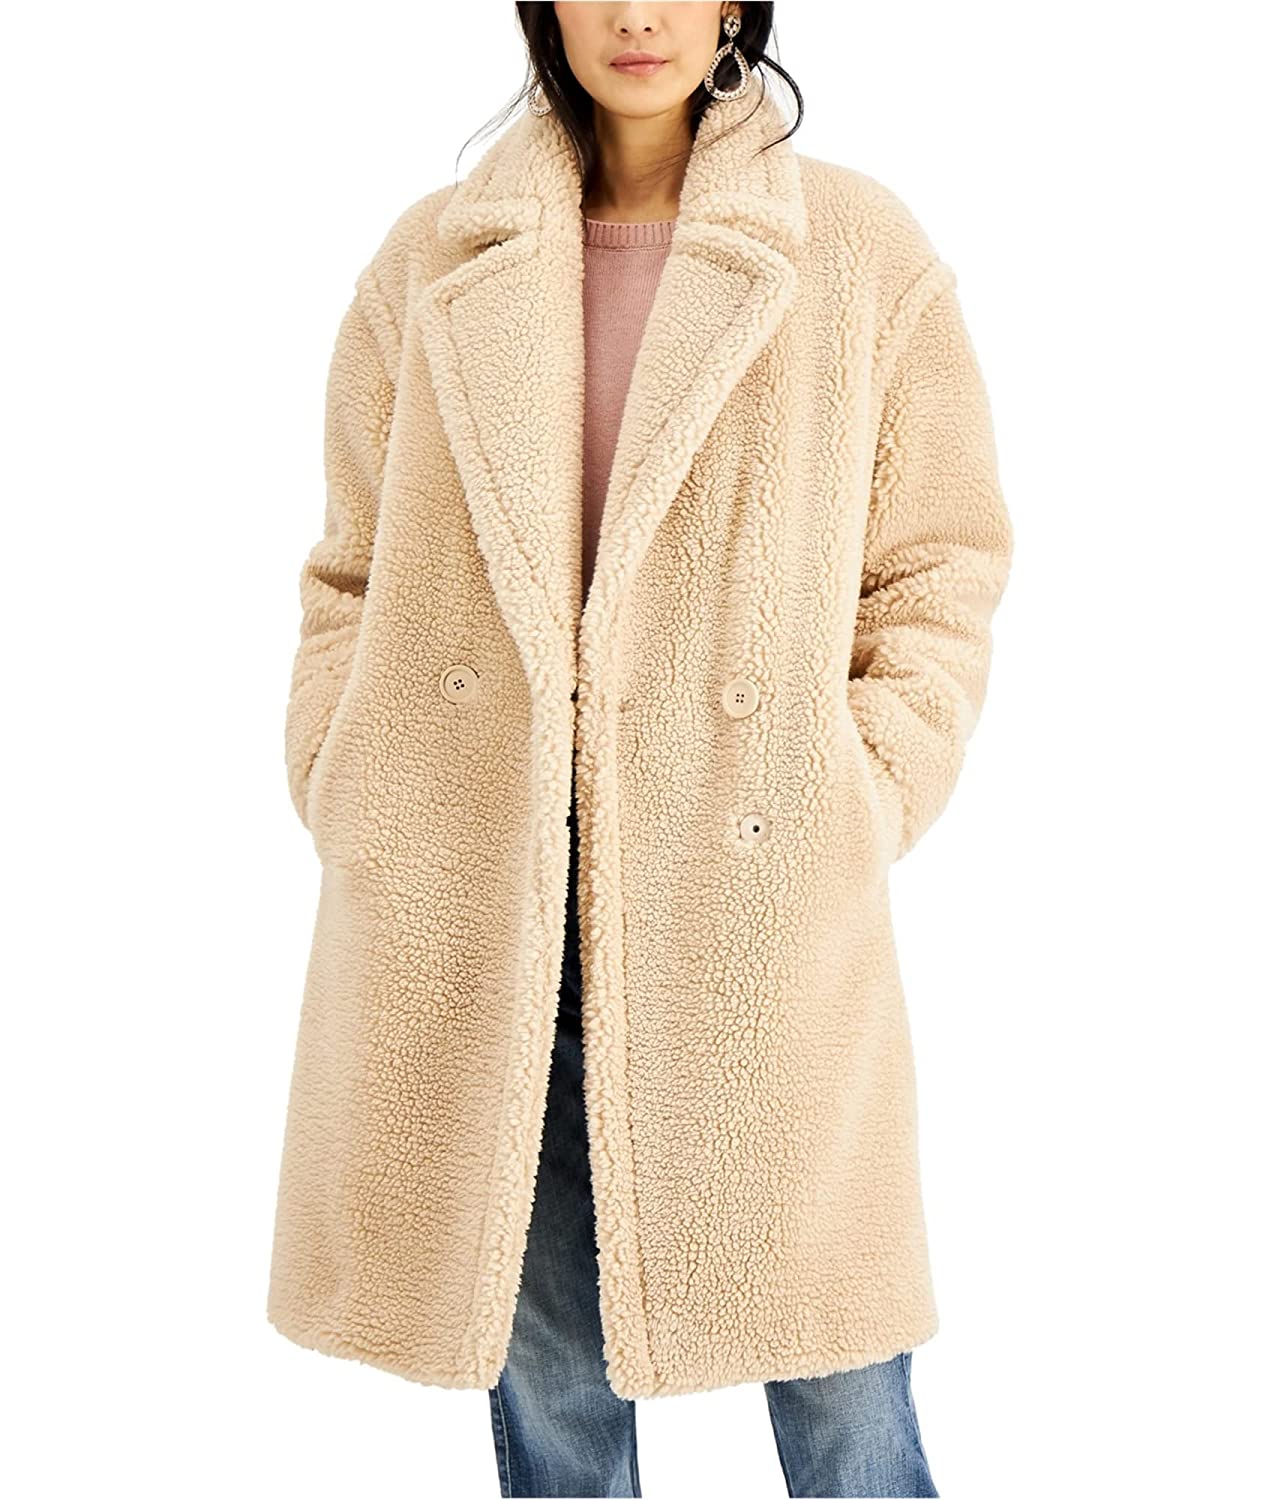 Stylish Fuzzy Coat